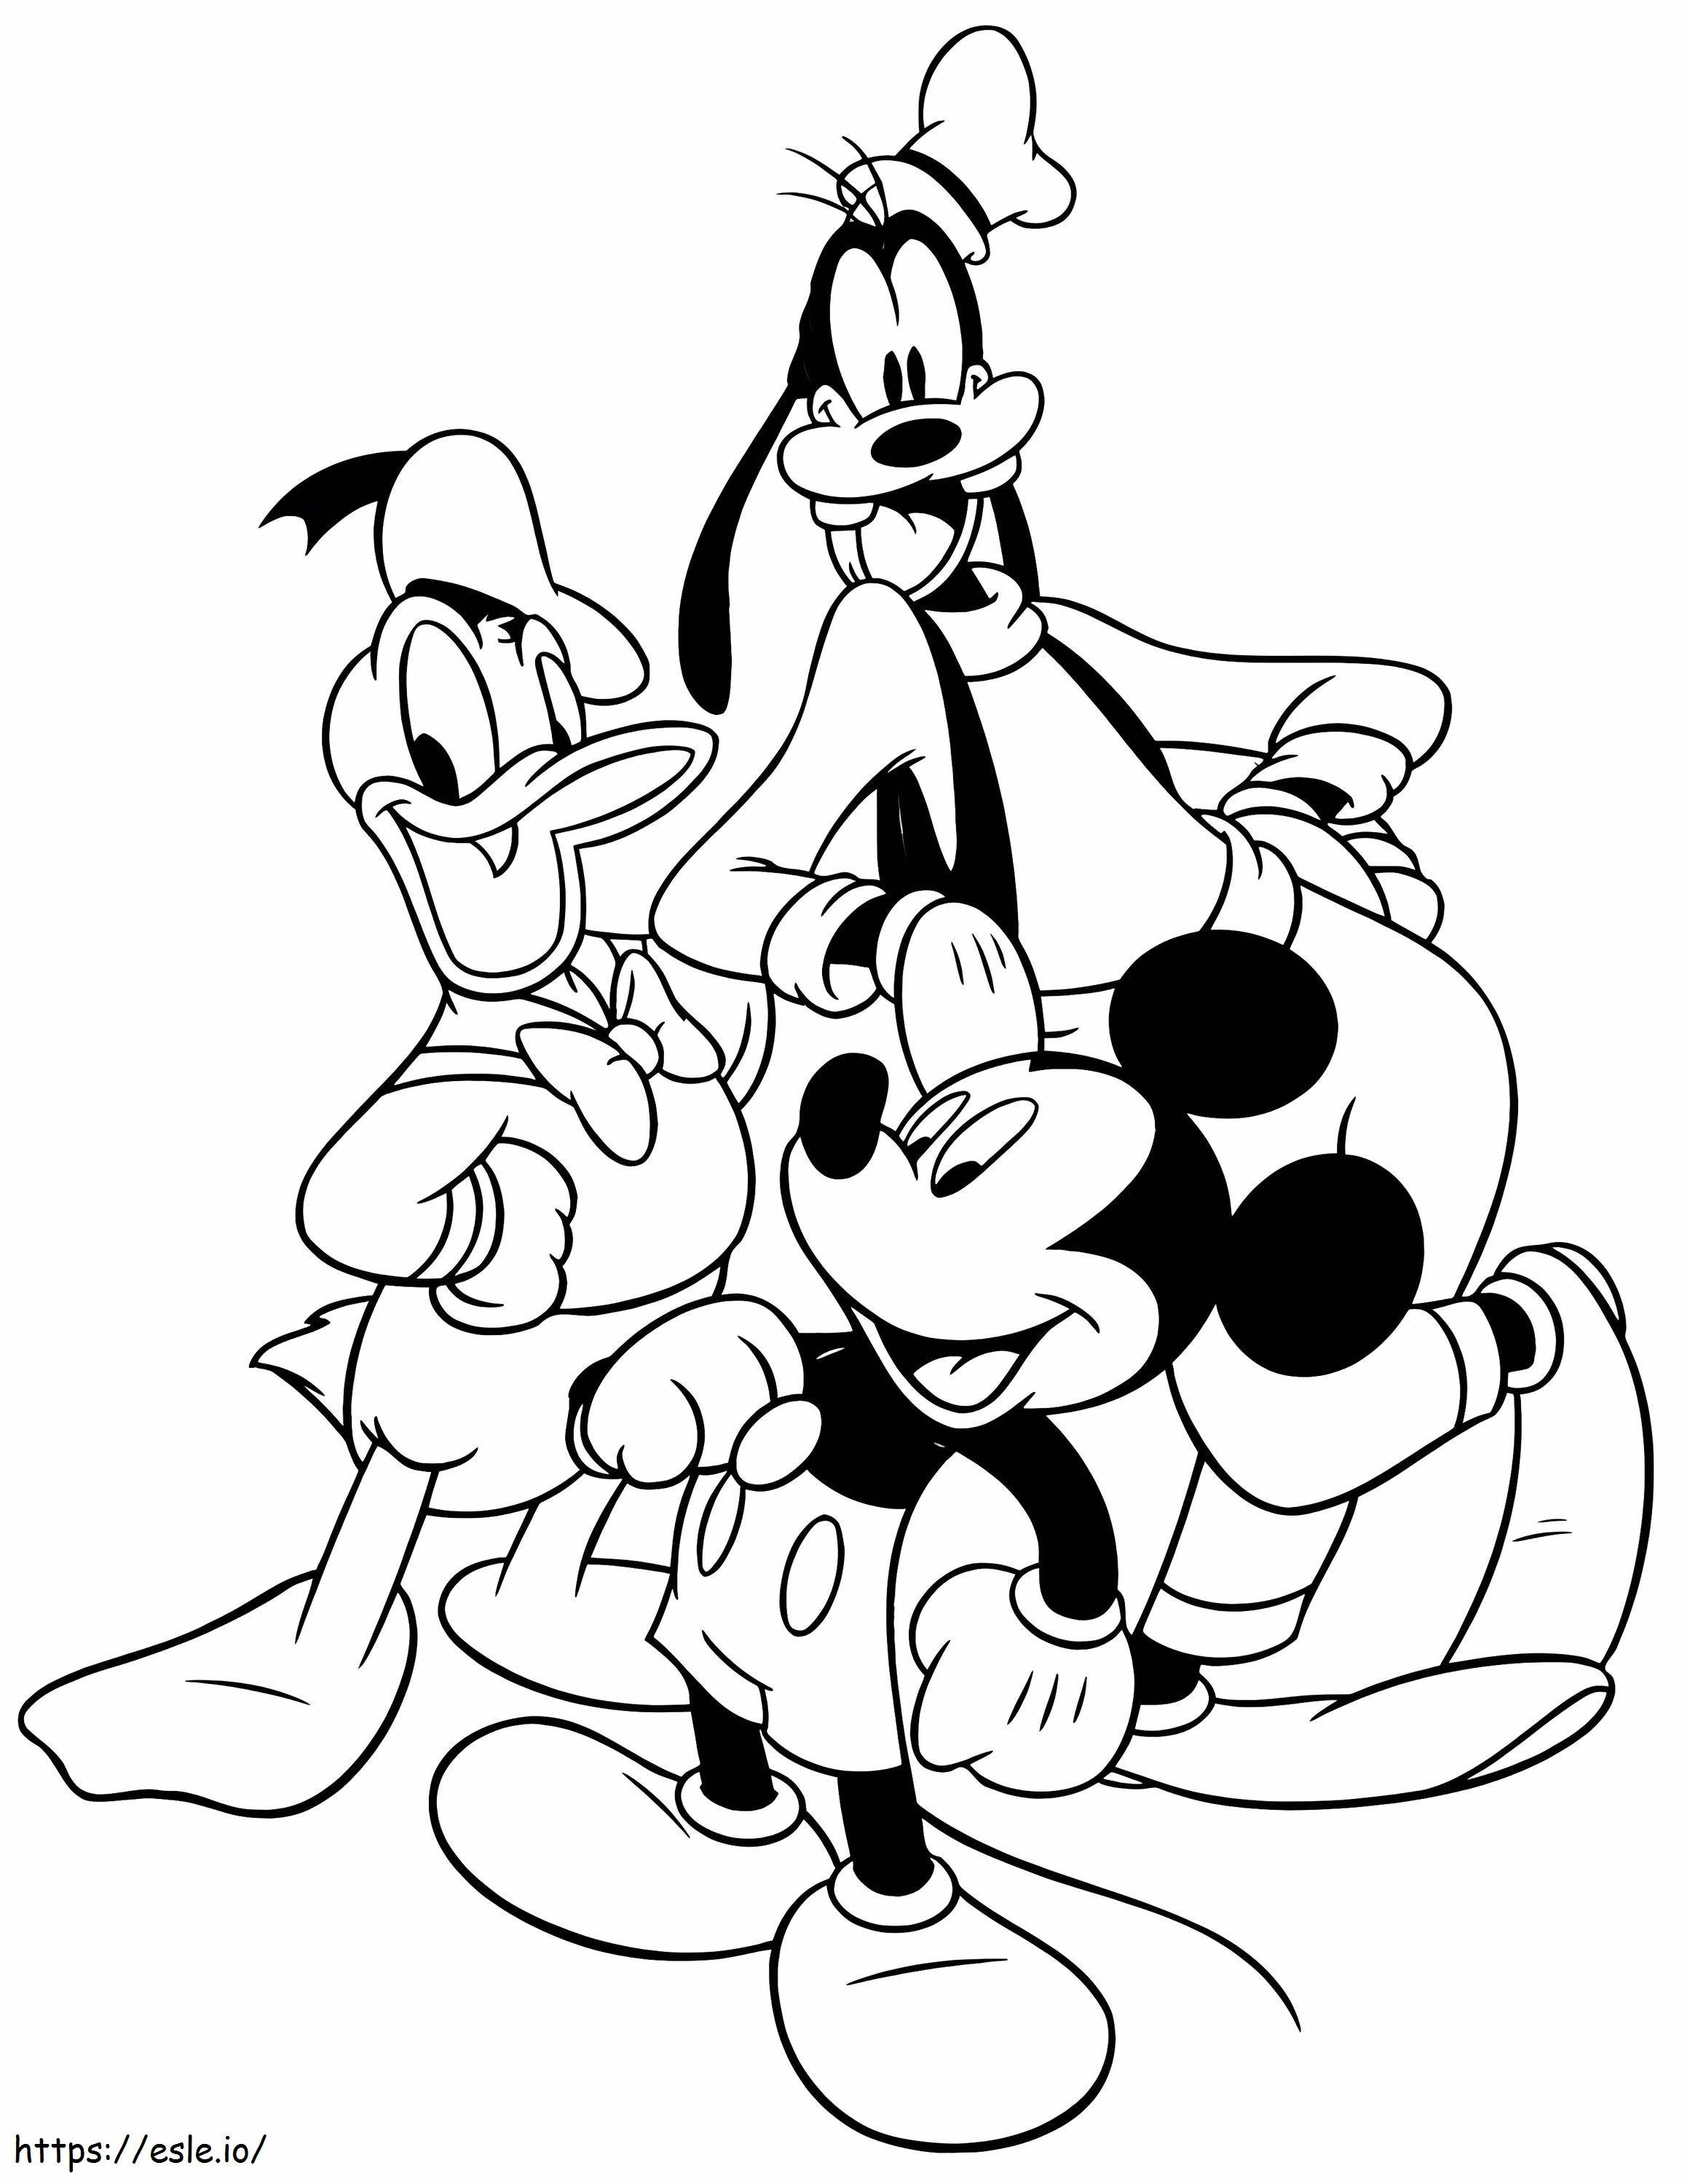 1532663581 Personagens Disney A4 para colorir